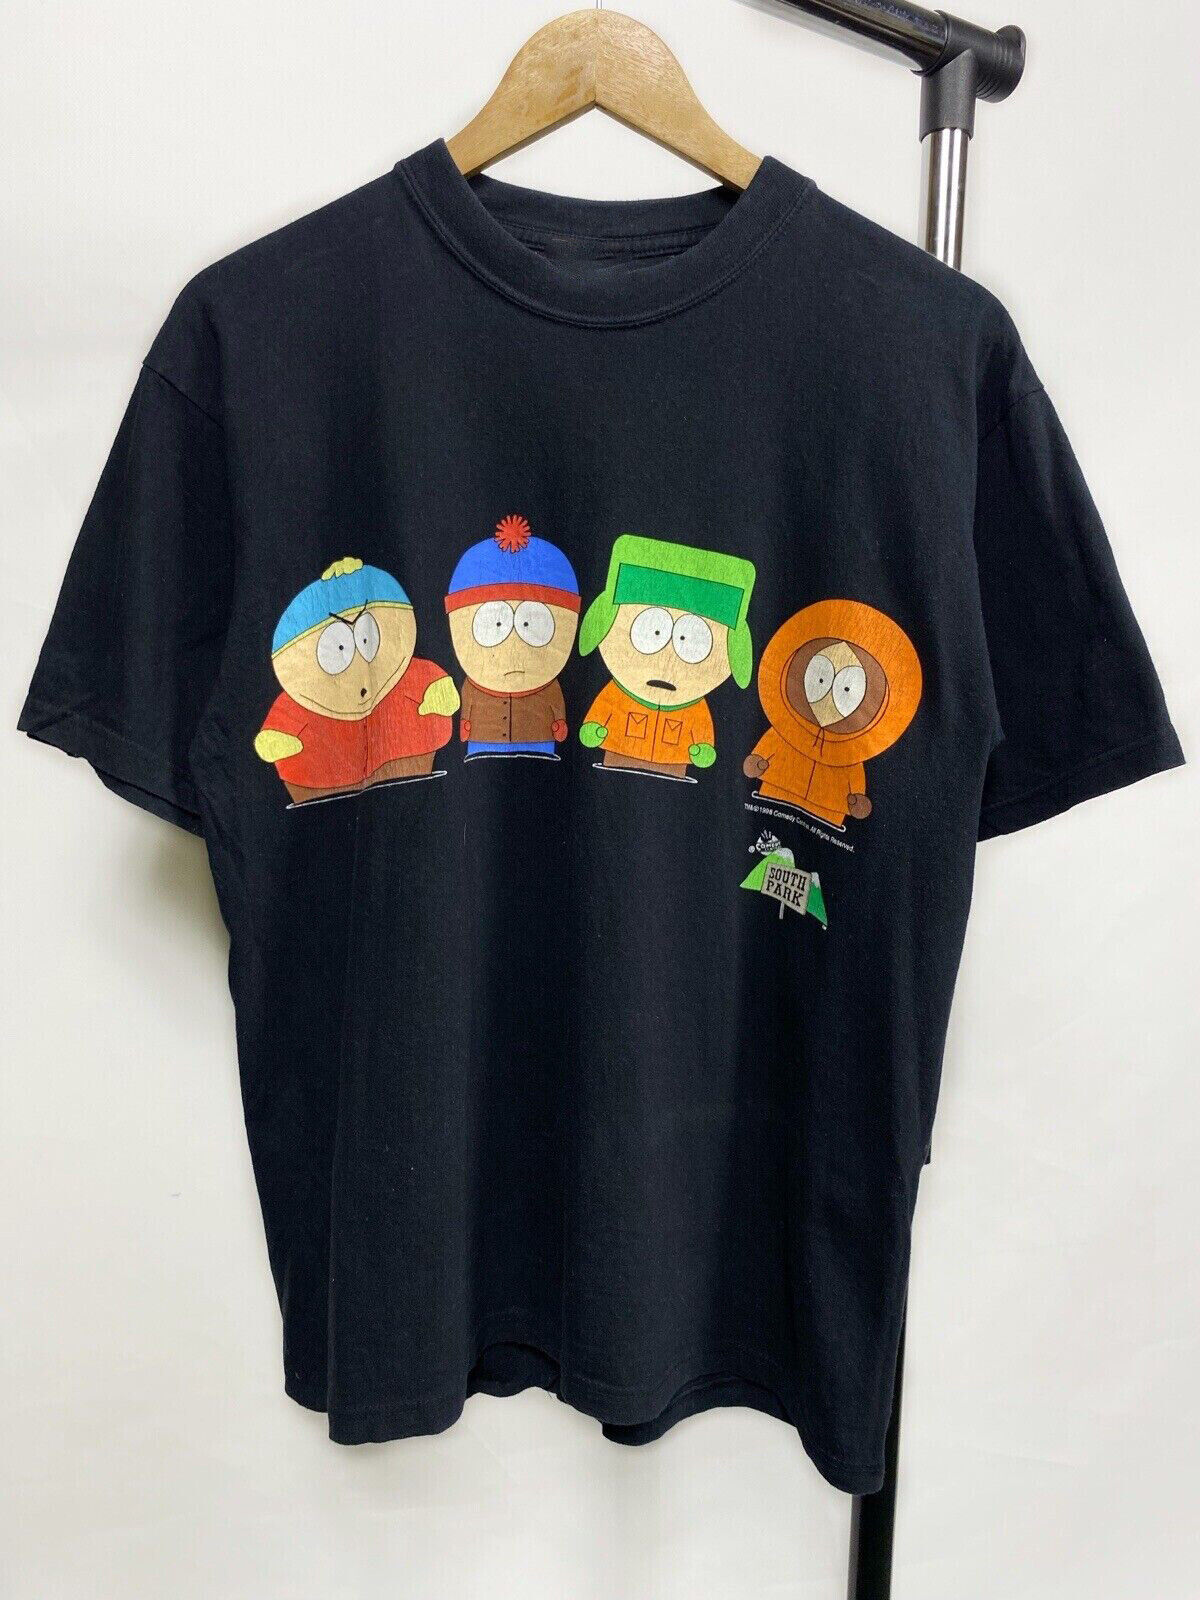 South Park Vintage t shirt 1998 Men's